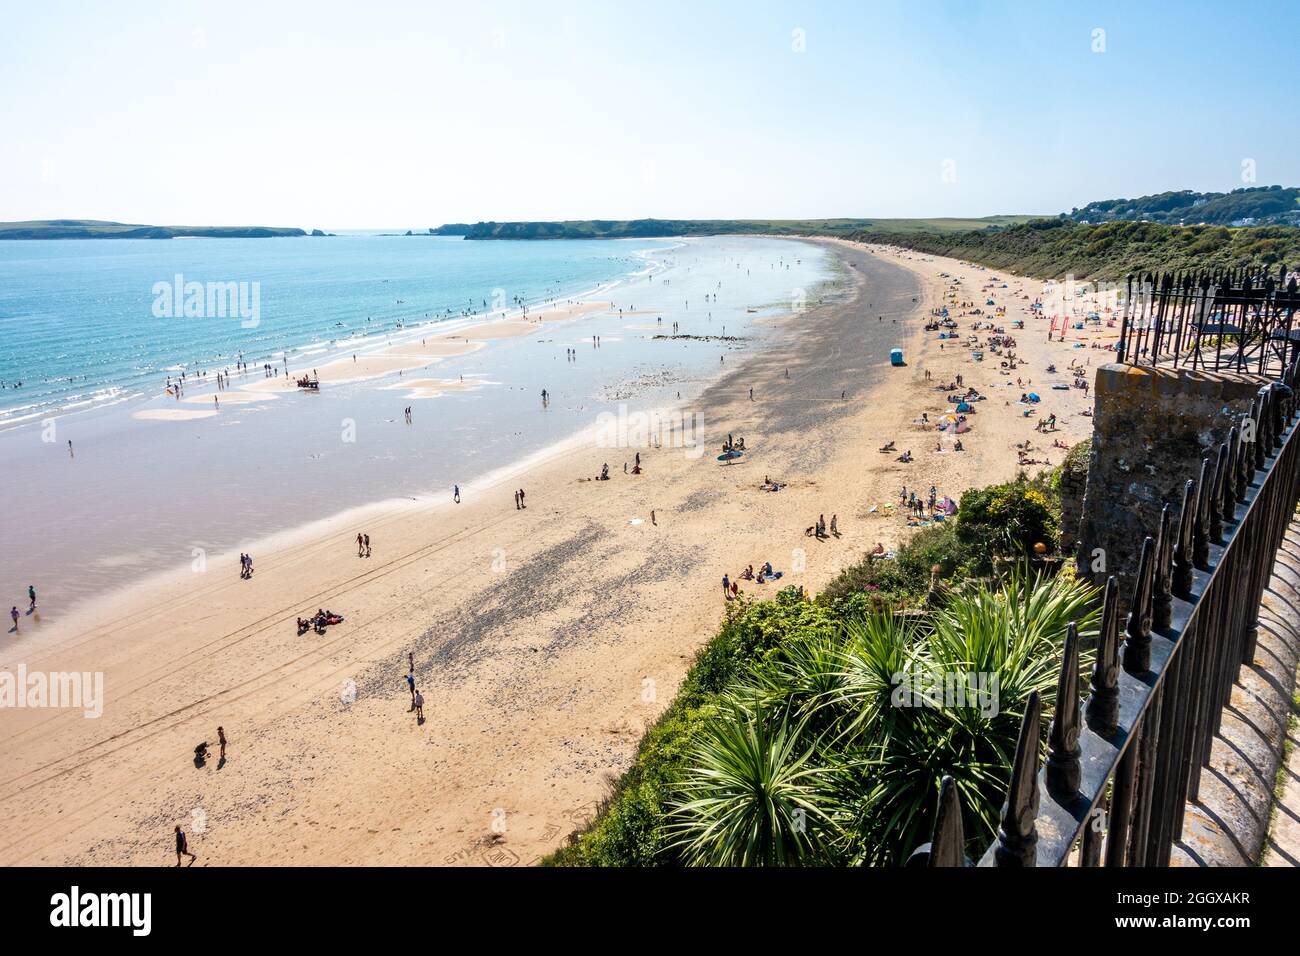 Le South Beach à Tenby dans Pembrokeshire, pays de Galles, Royaume-Uni est une plage de sable et un lieu de vacances, vu de haute altitude Banque D'Images